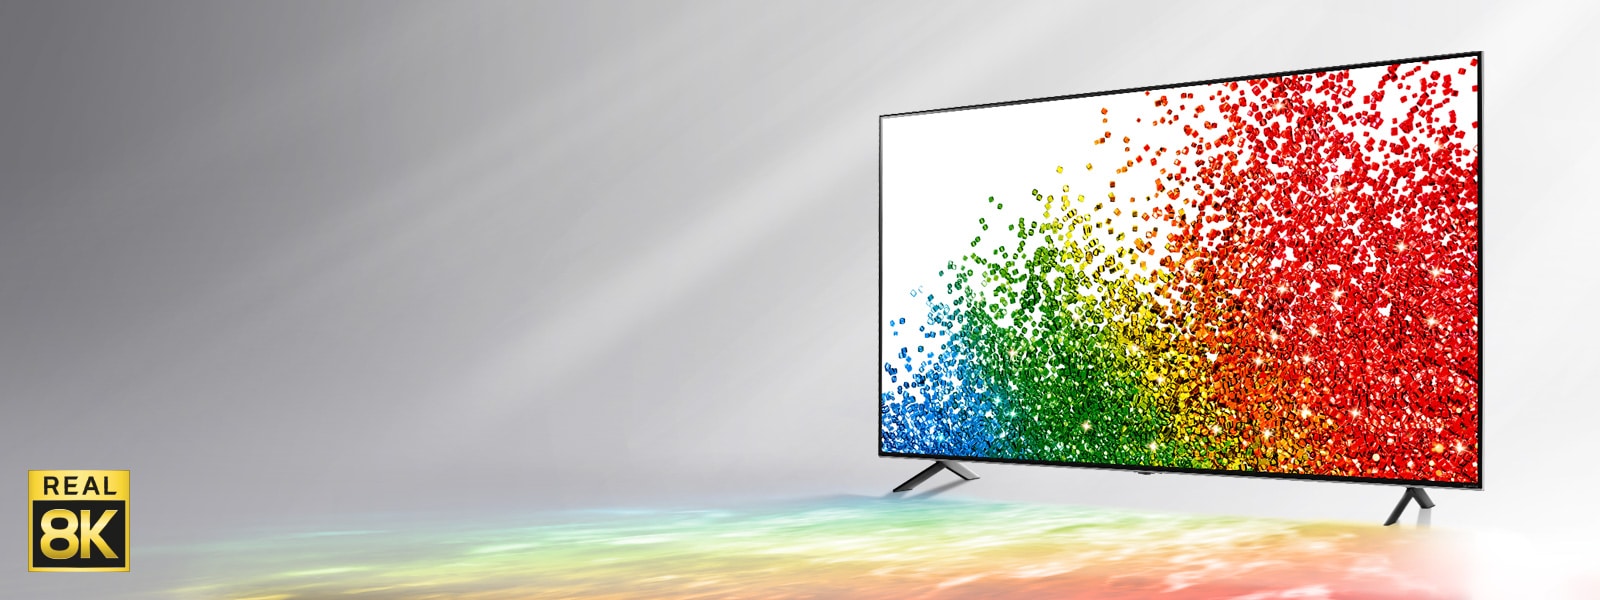 En bild av LG NanoCell mot en grå bakgrund där färgerna från skärmen reflekteras på marken framför TV:n.